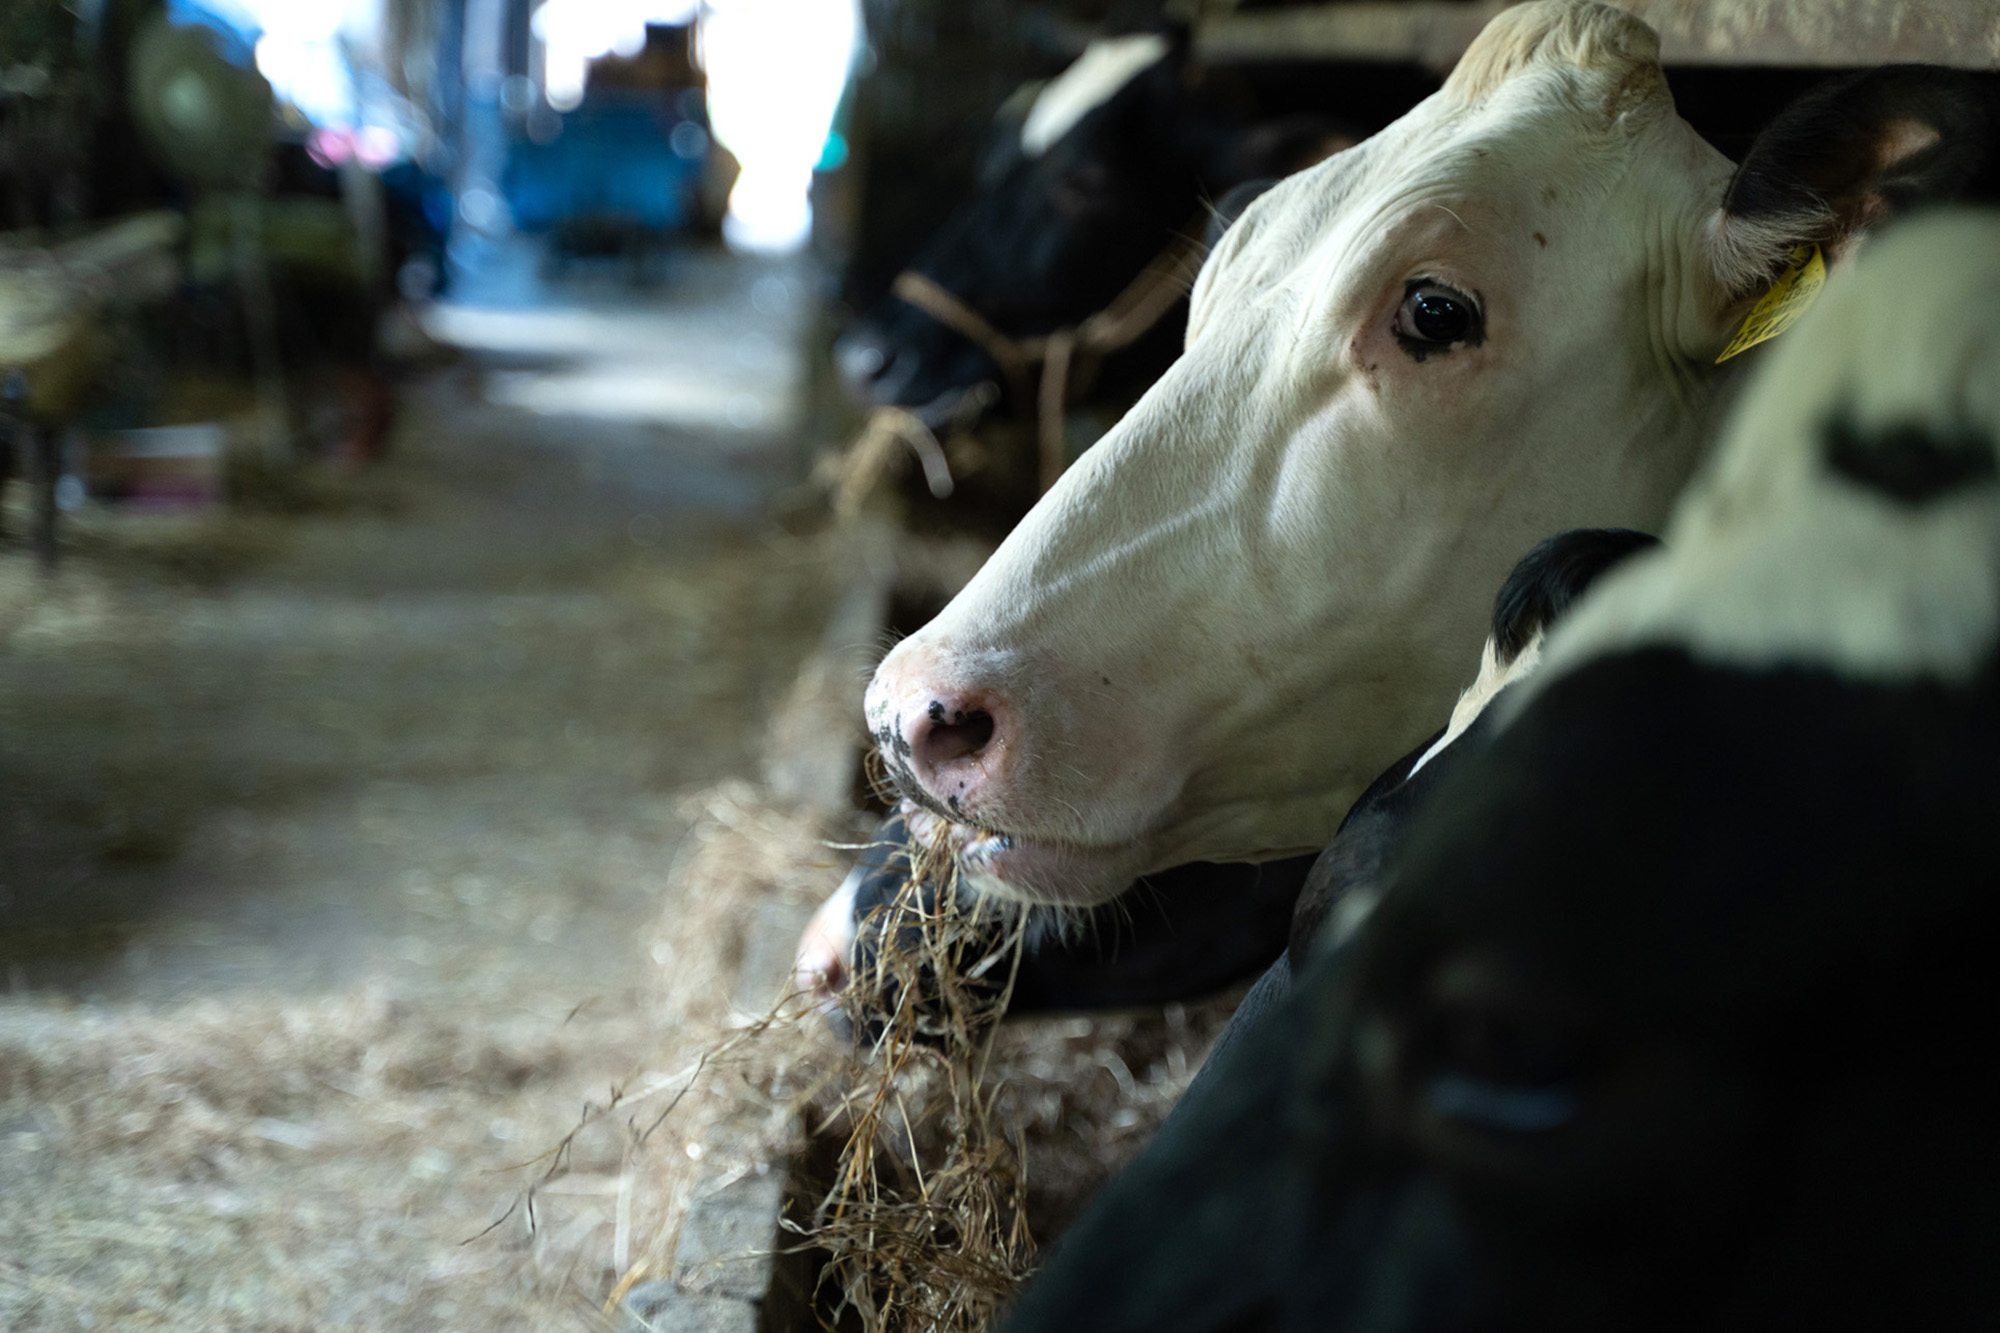 「たなべ牧場」では、牛たちのストレス軽減のため、モーツァルトを聴かせる取り組みを実施しています。